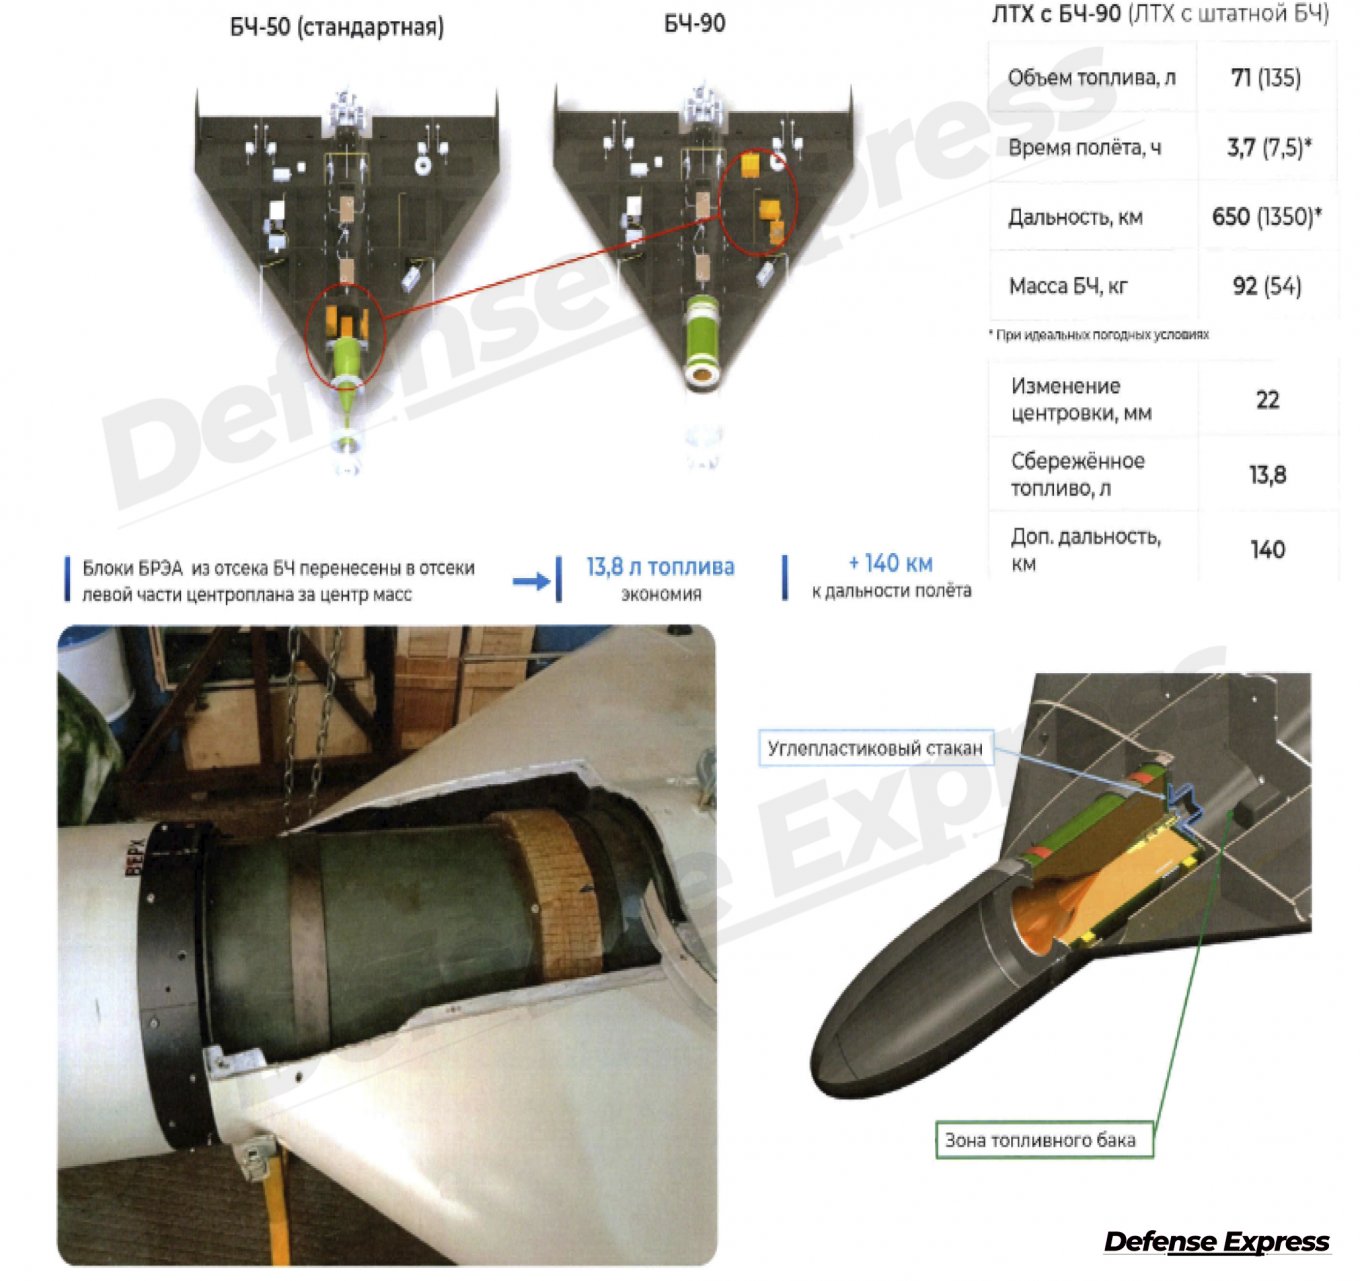 Đầu đạn BCh-90 mới dành cho Shahed-136 / Defense Express / Đầu đạn 90 kg mới của Shahed-136 và những phát hiện khác về rò rỉ dữ liệu Alabuga